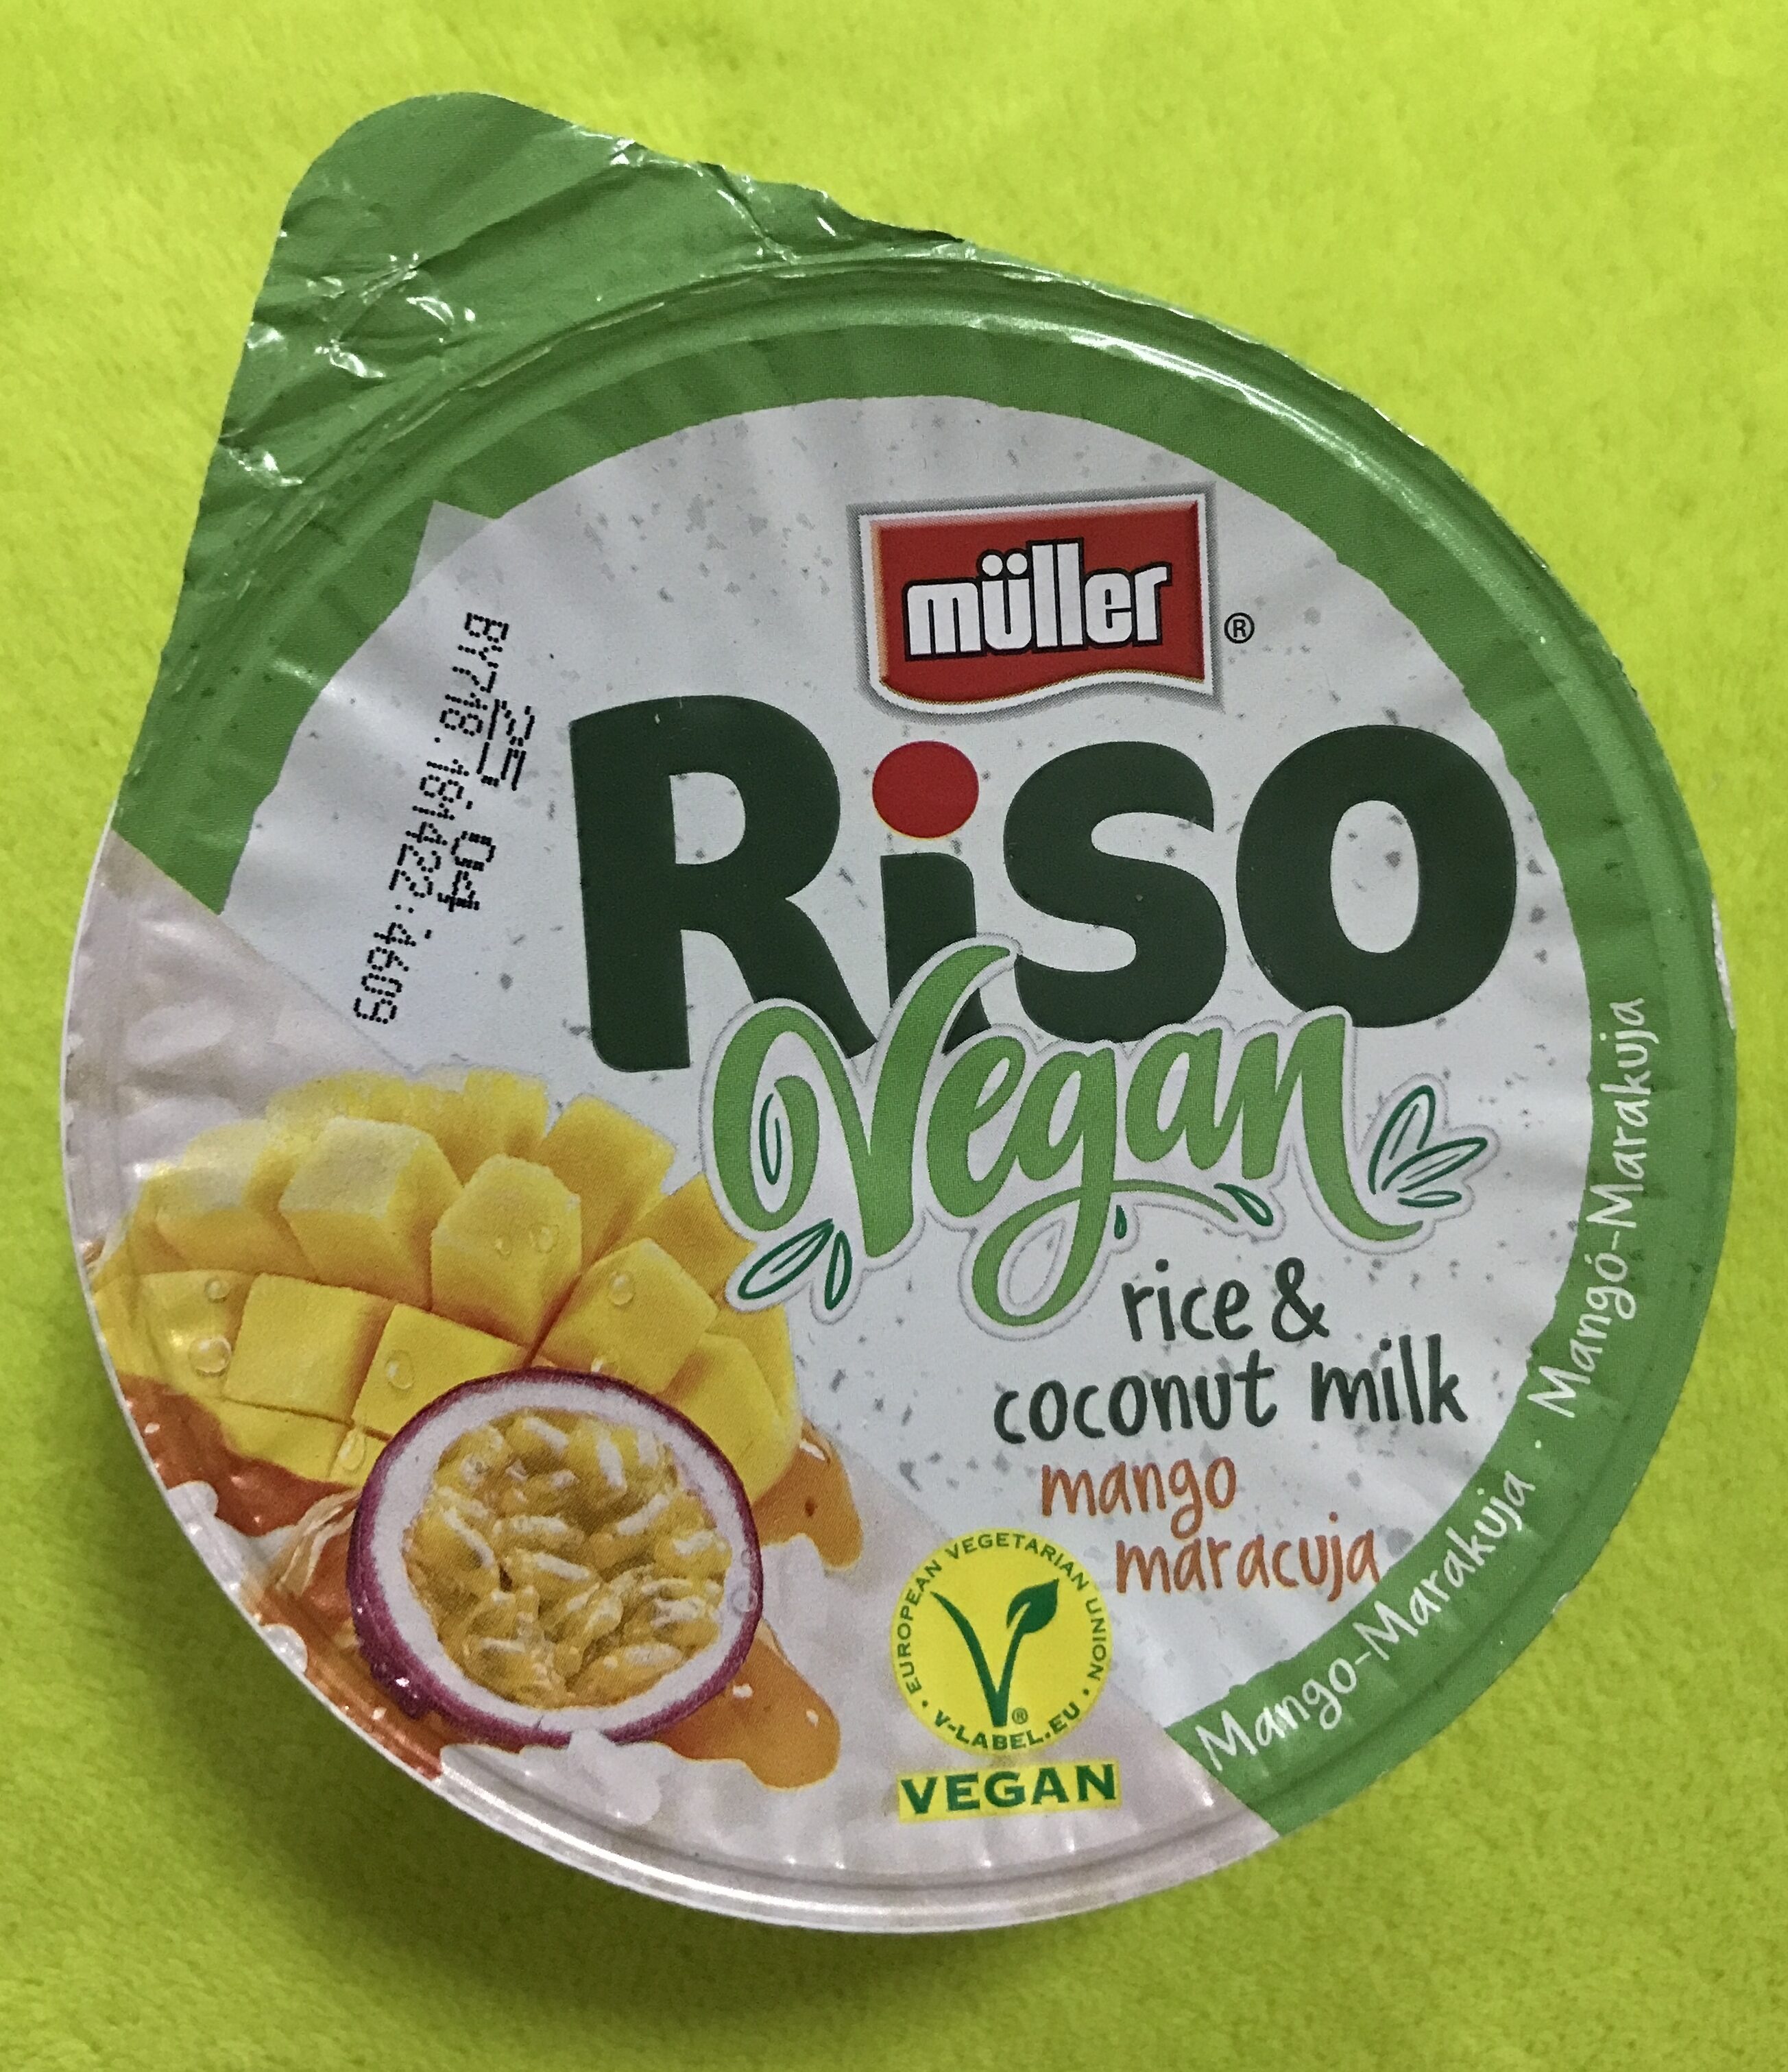 Riso vegan mango a maracuja - Product - cs